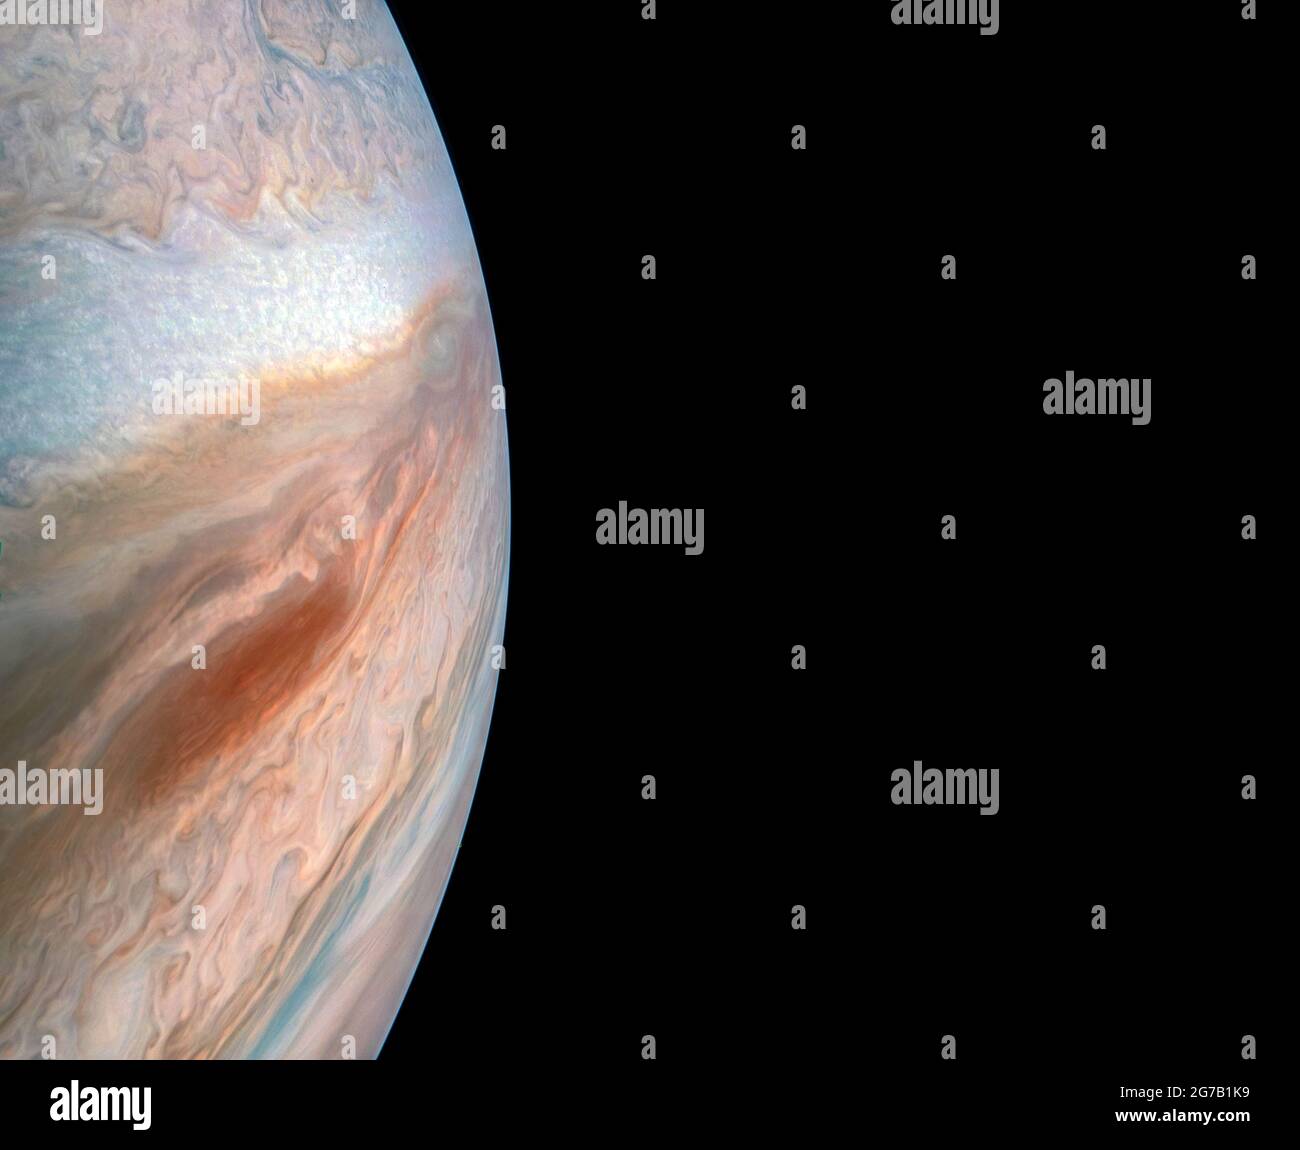 La cintura equatoriale del Sud di Giove è catturata in questa immagine a colori migliorata dalla navicella spaziale Juno della NASA. Una versione ottimizzata e migliorata di un'immagine NASA / credito NASA Foto Stock